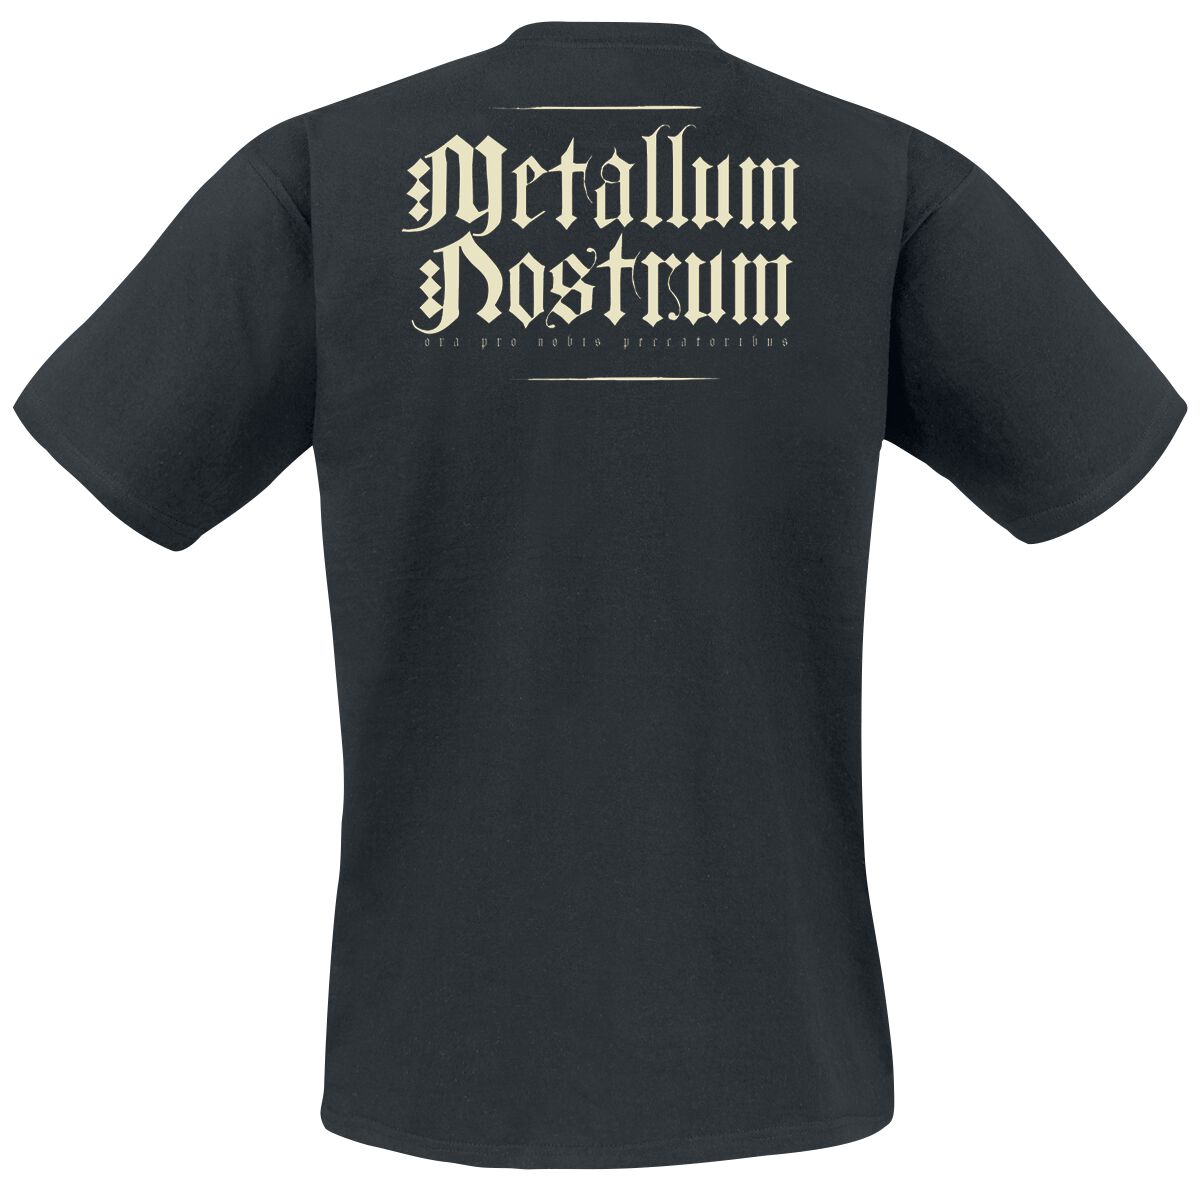 Metallum Nostrum, Powerwolf T-Shirt